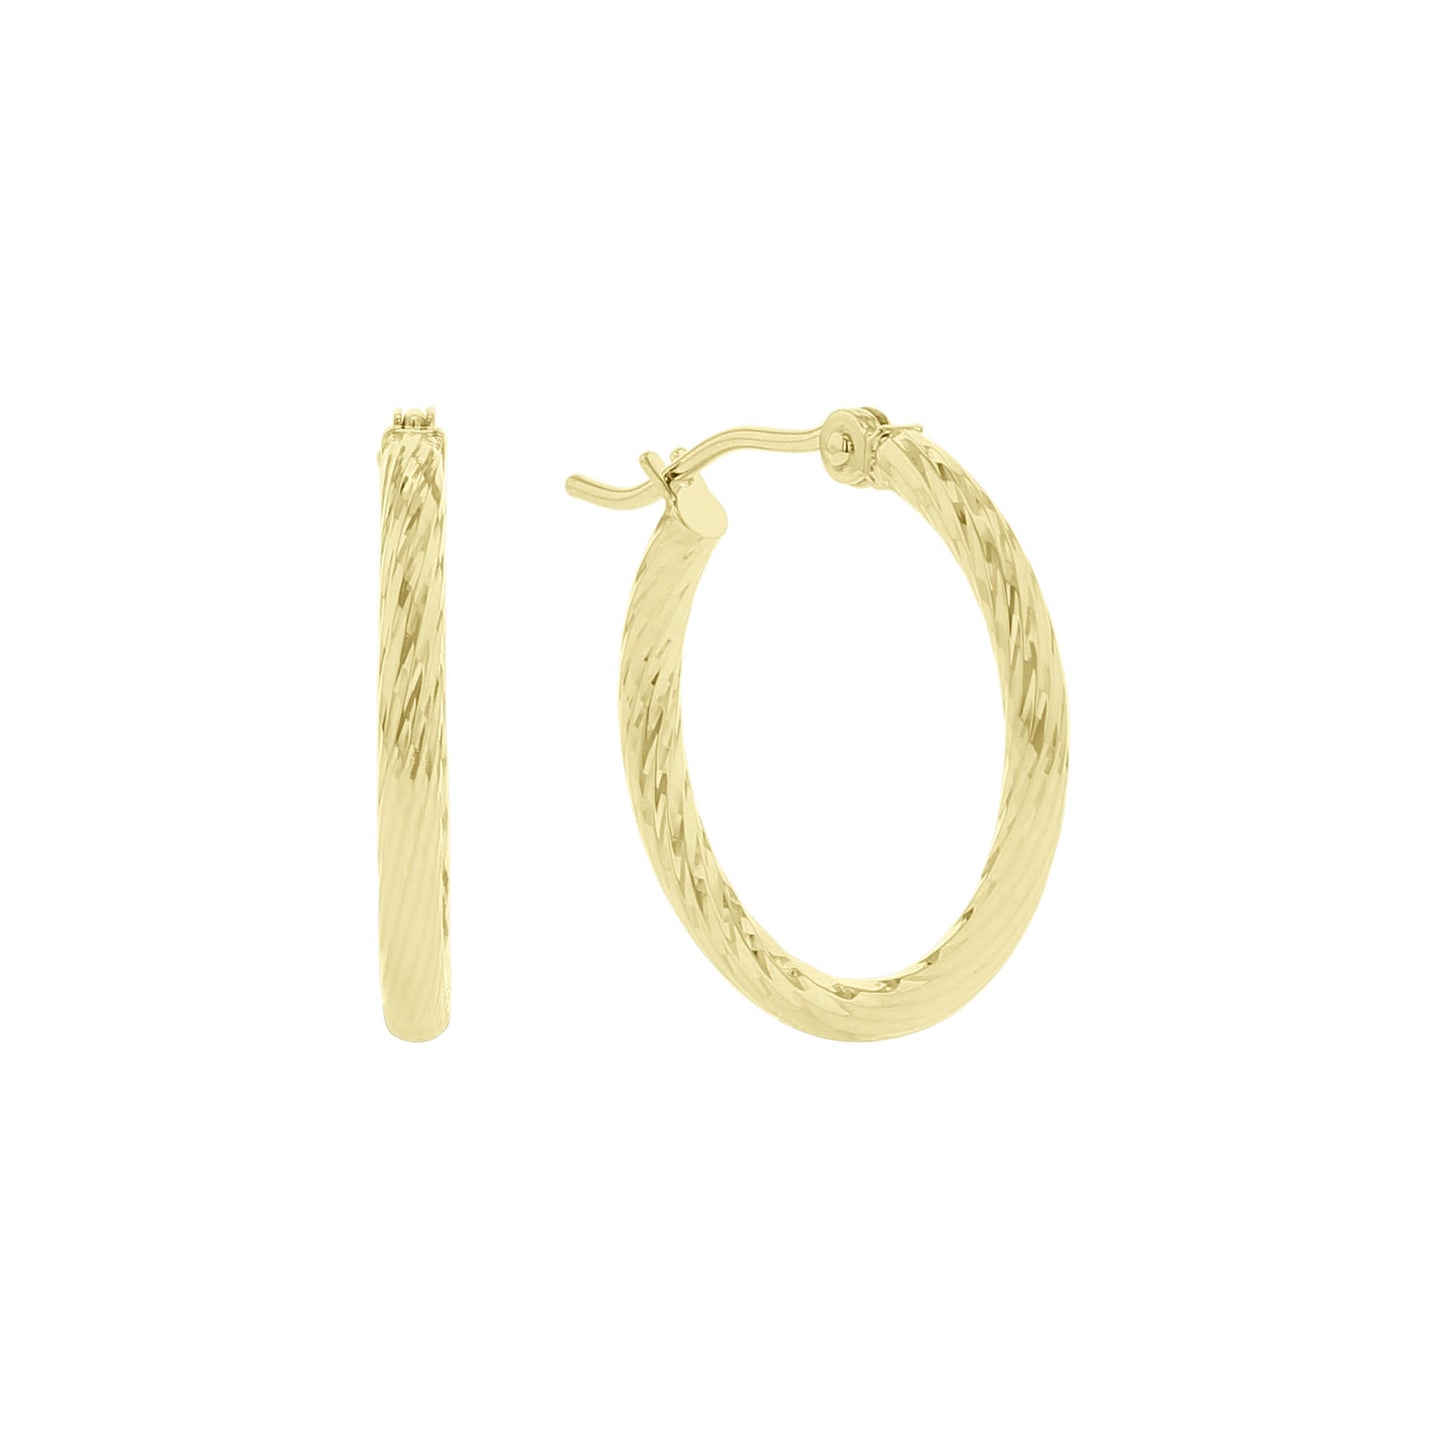 Breezy Gold Hoop Earrings -2x15MM